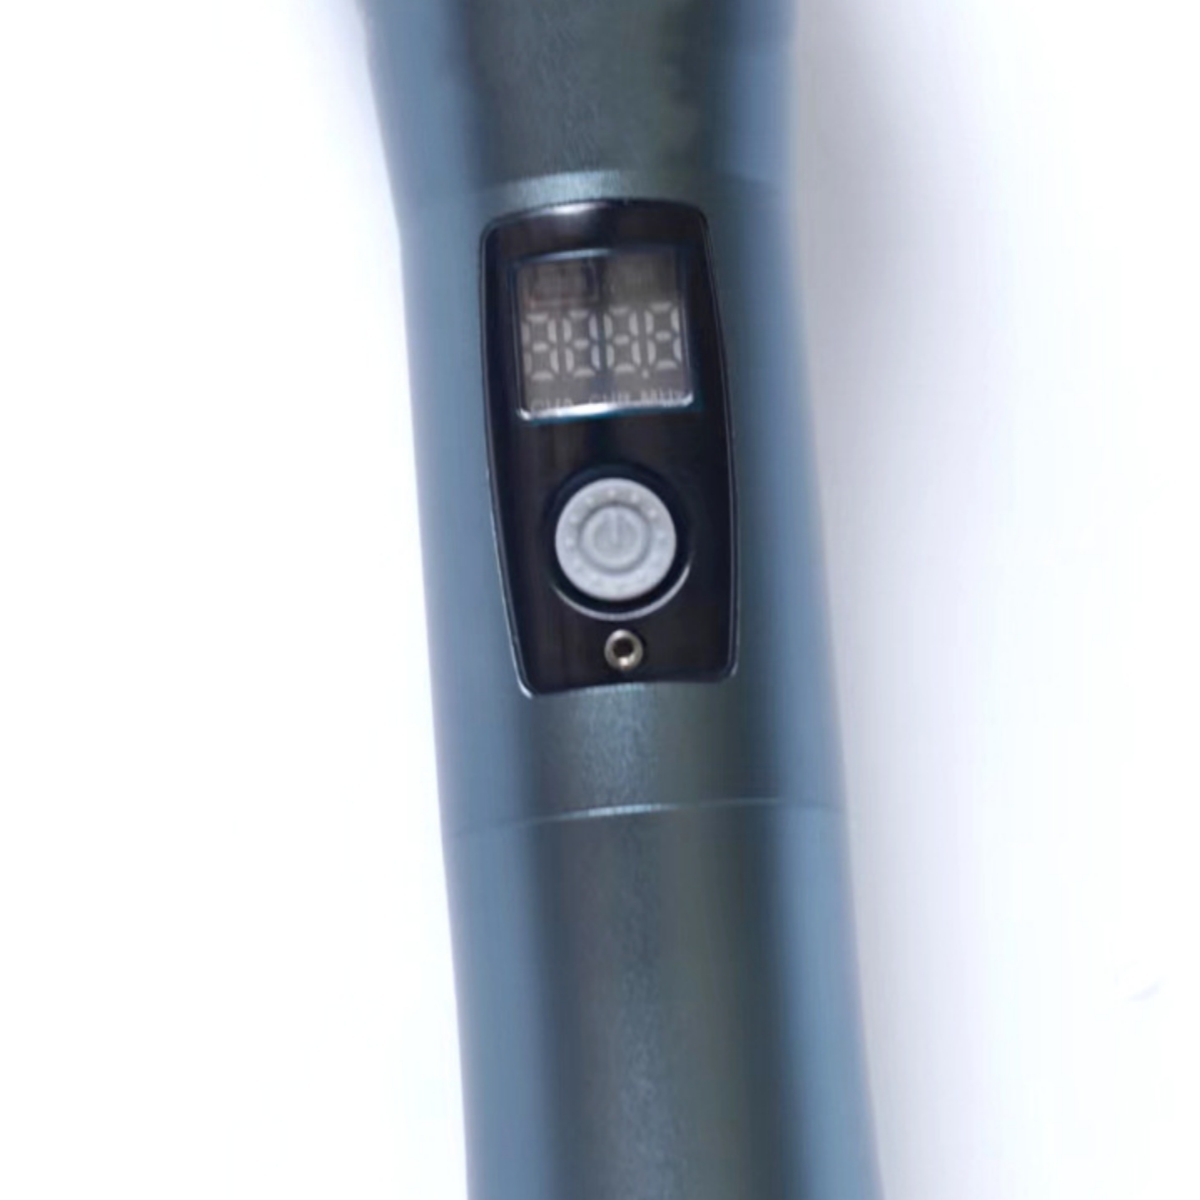 Echo Blau Portable Bluetooth-Lautsprecher Wearable SHAOKE Subwoofer Wireless Wall Mikrofone, Hals